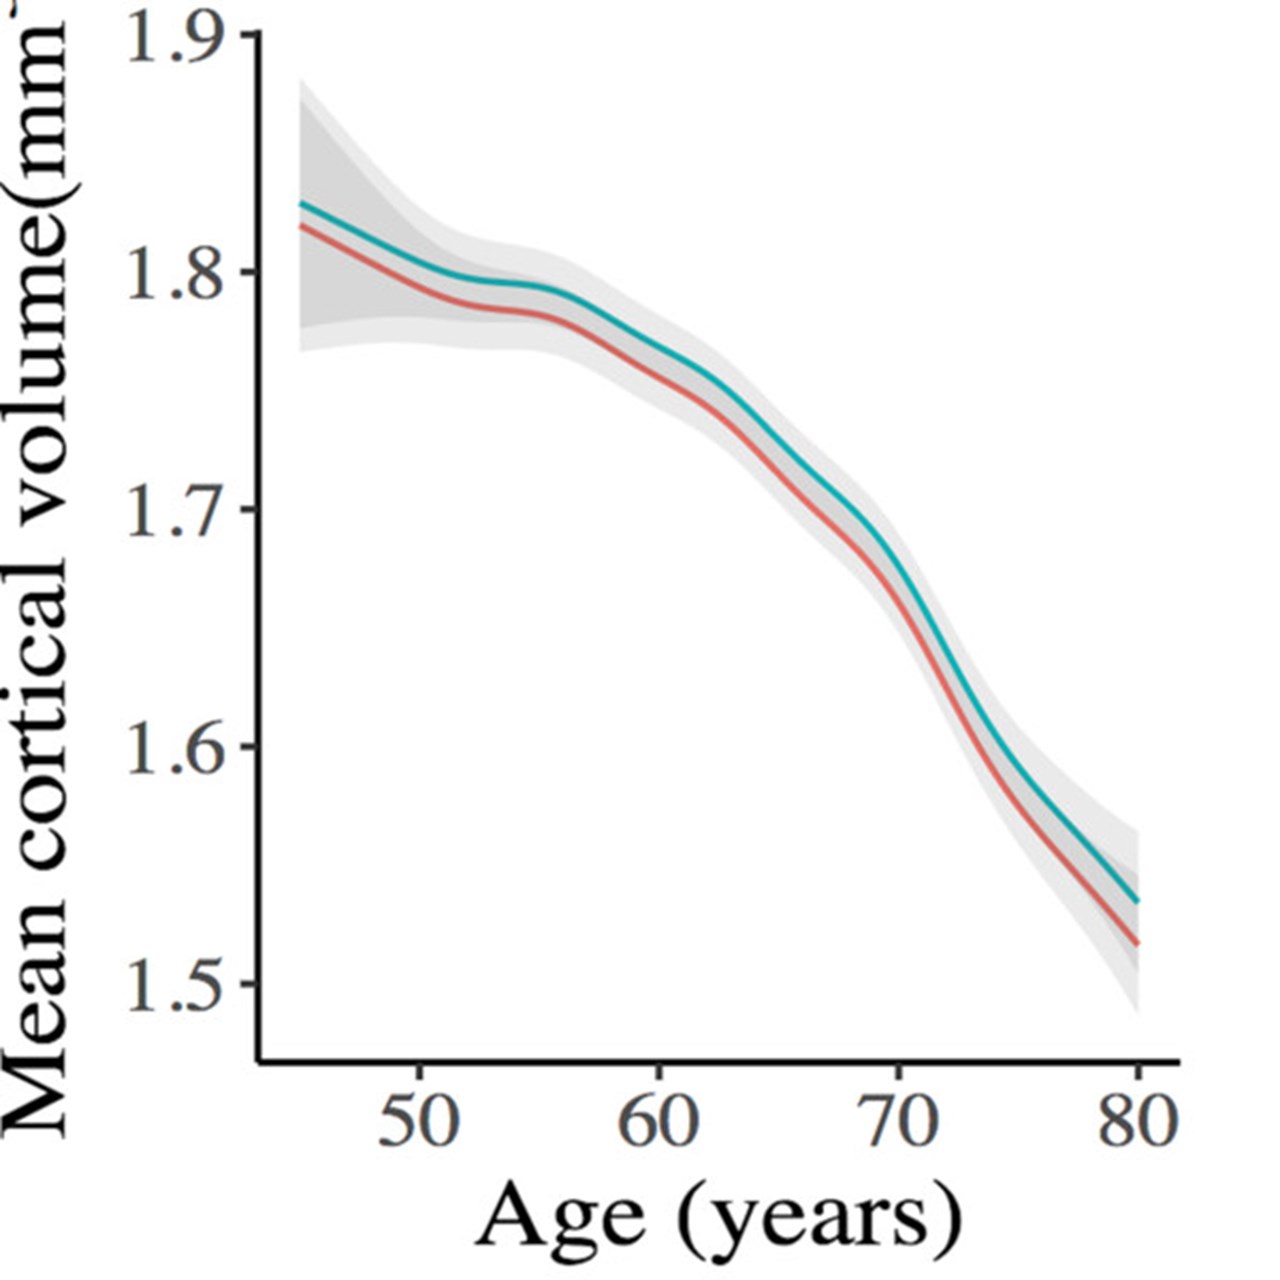 Graf som visar hur hjärnbarken krymper med sitgande ålder för hög- respektive lågubildade